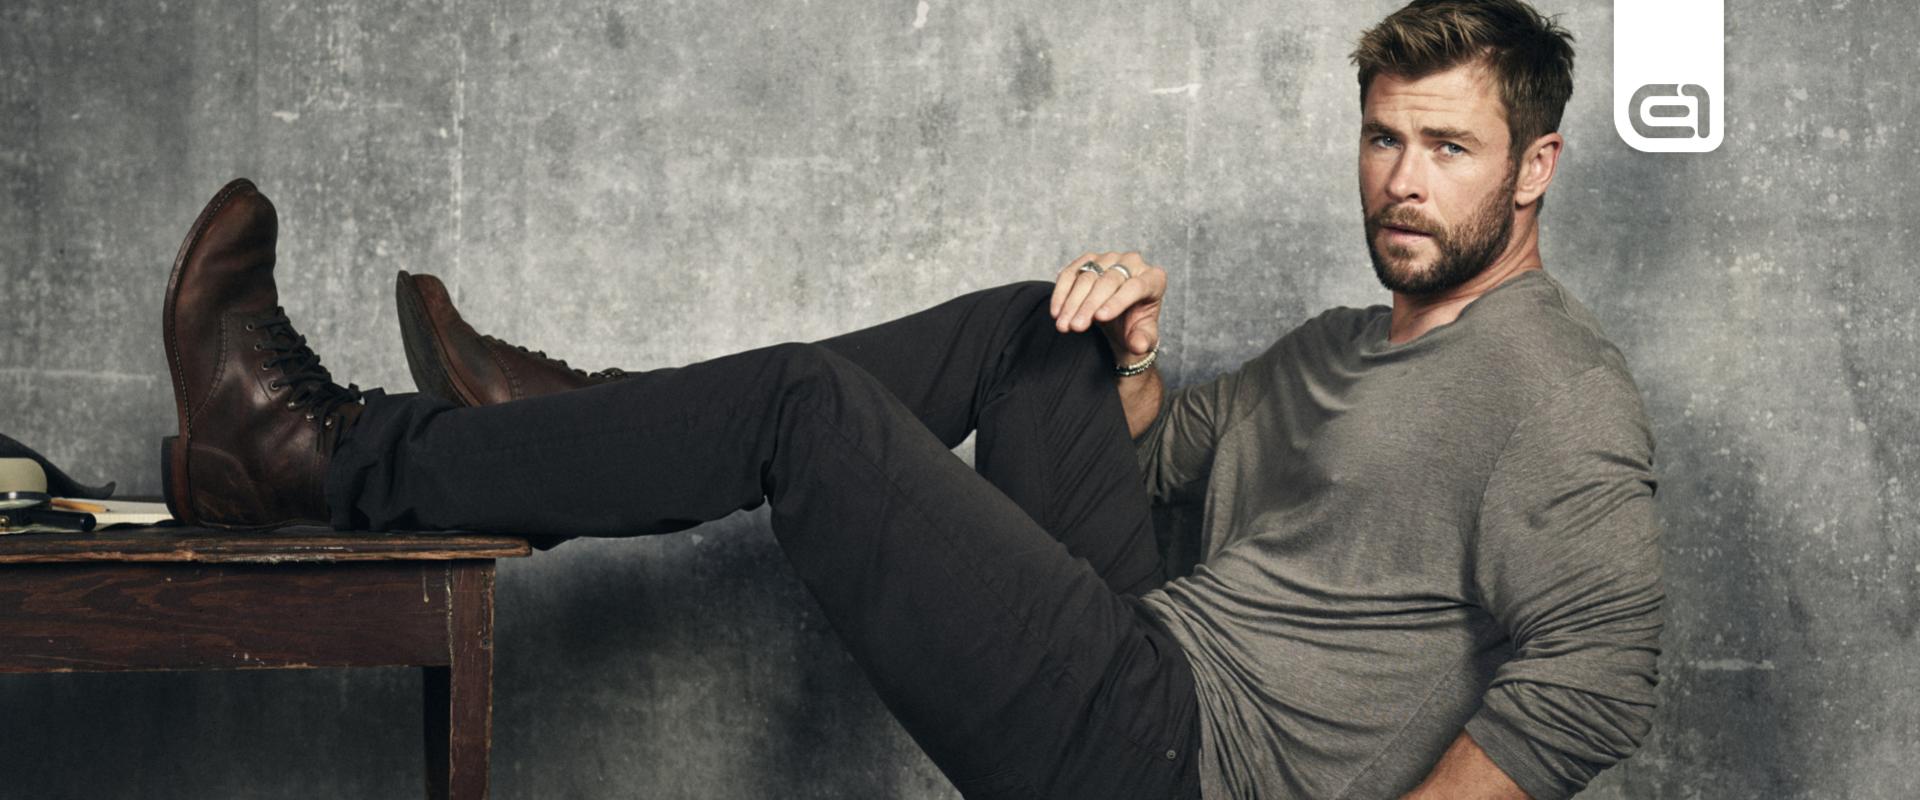 Chris Hemsworth visszavonul a színészkedéstől, de nem végleg